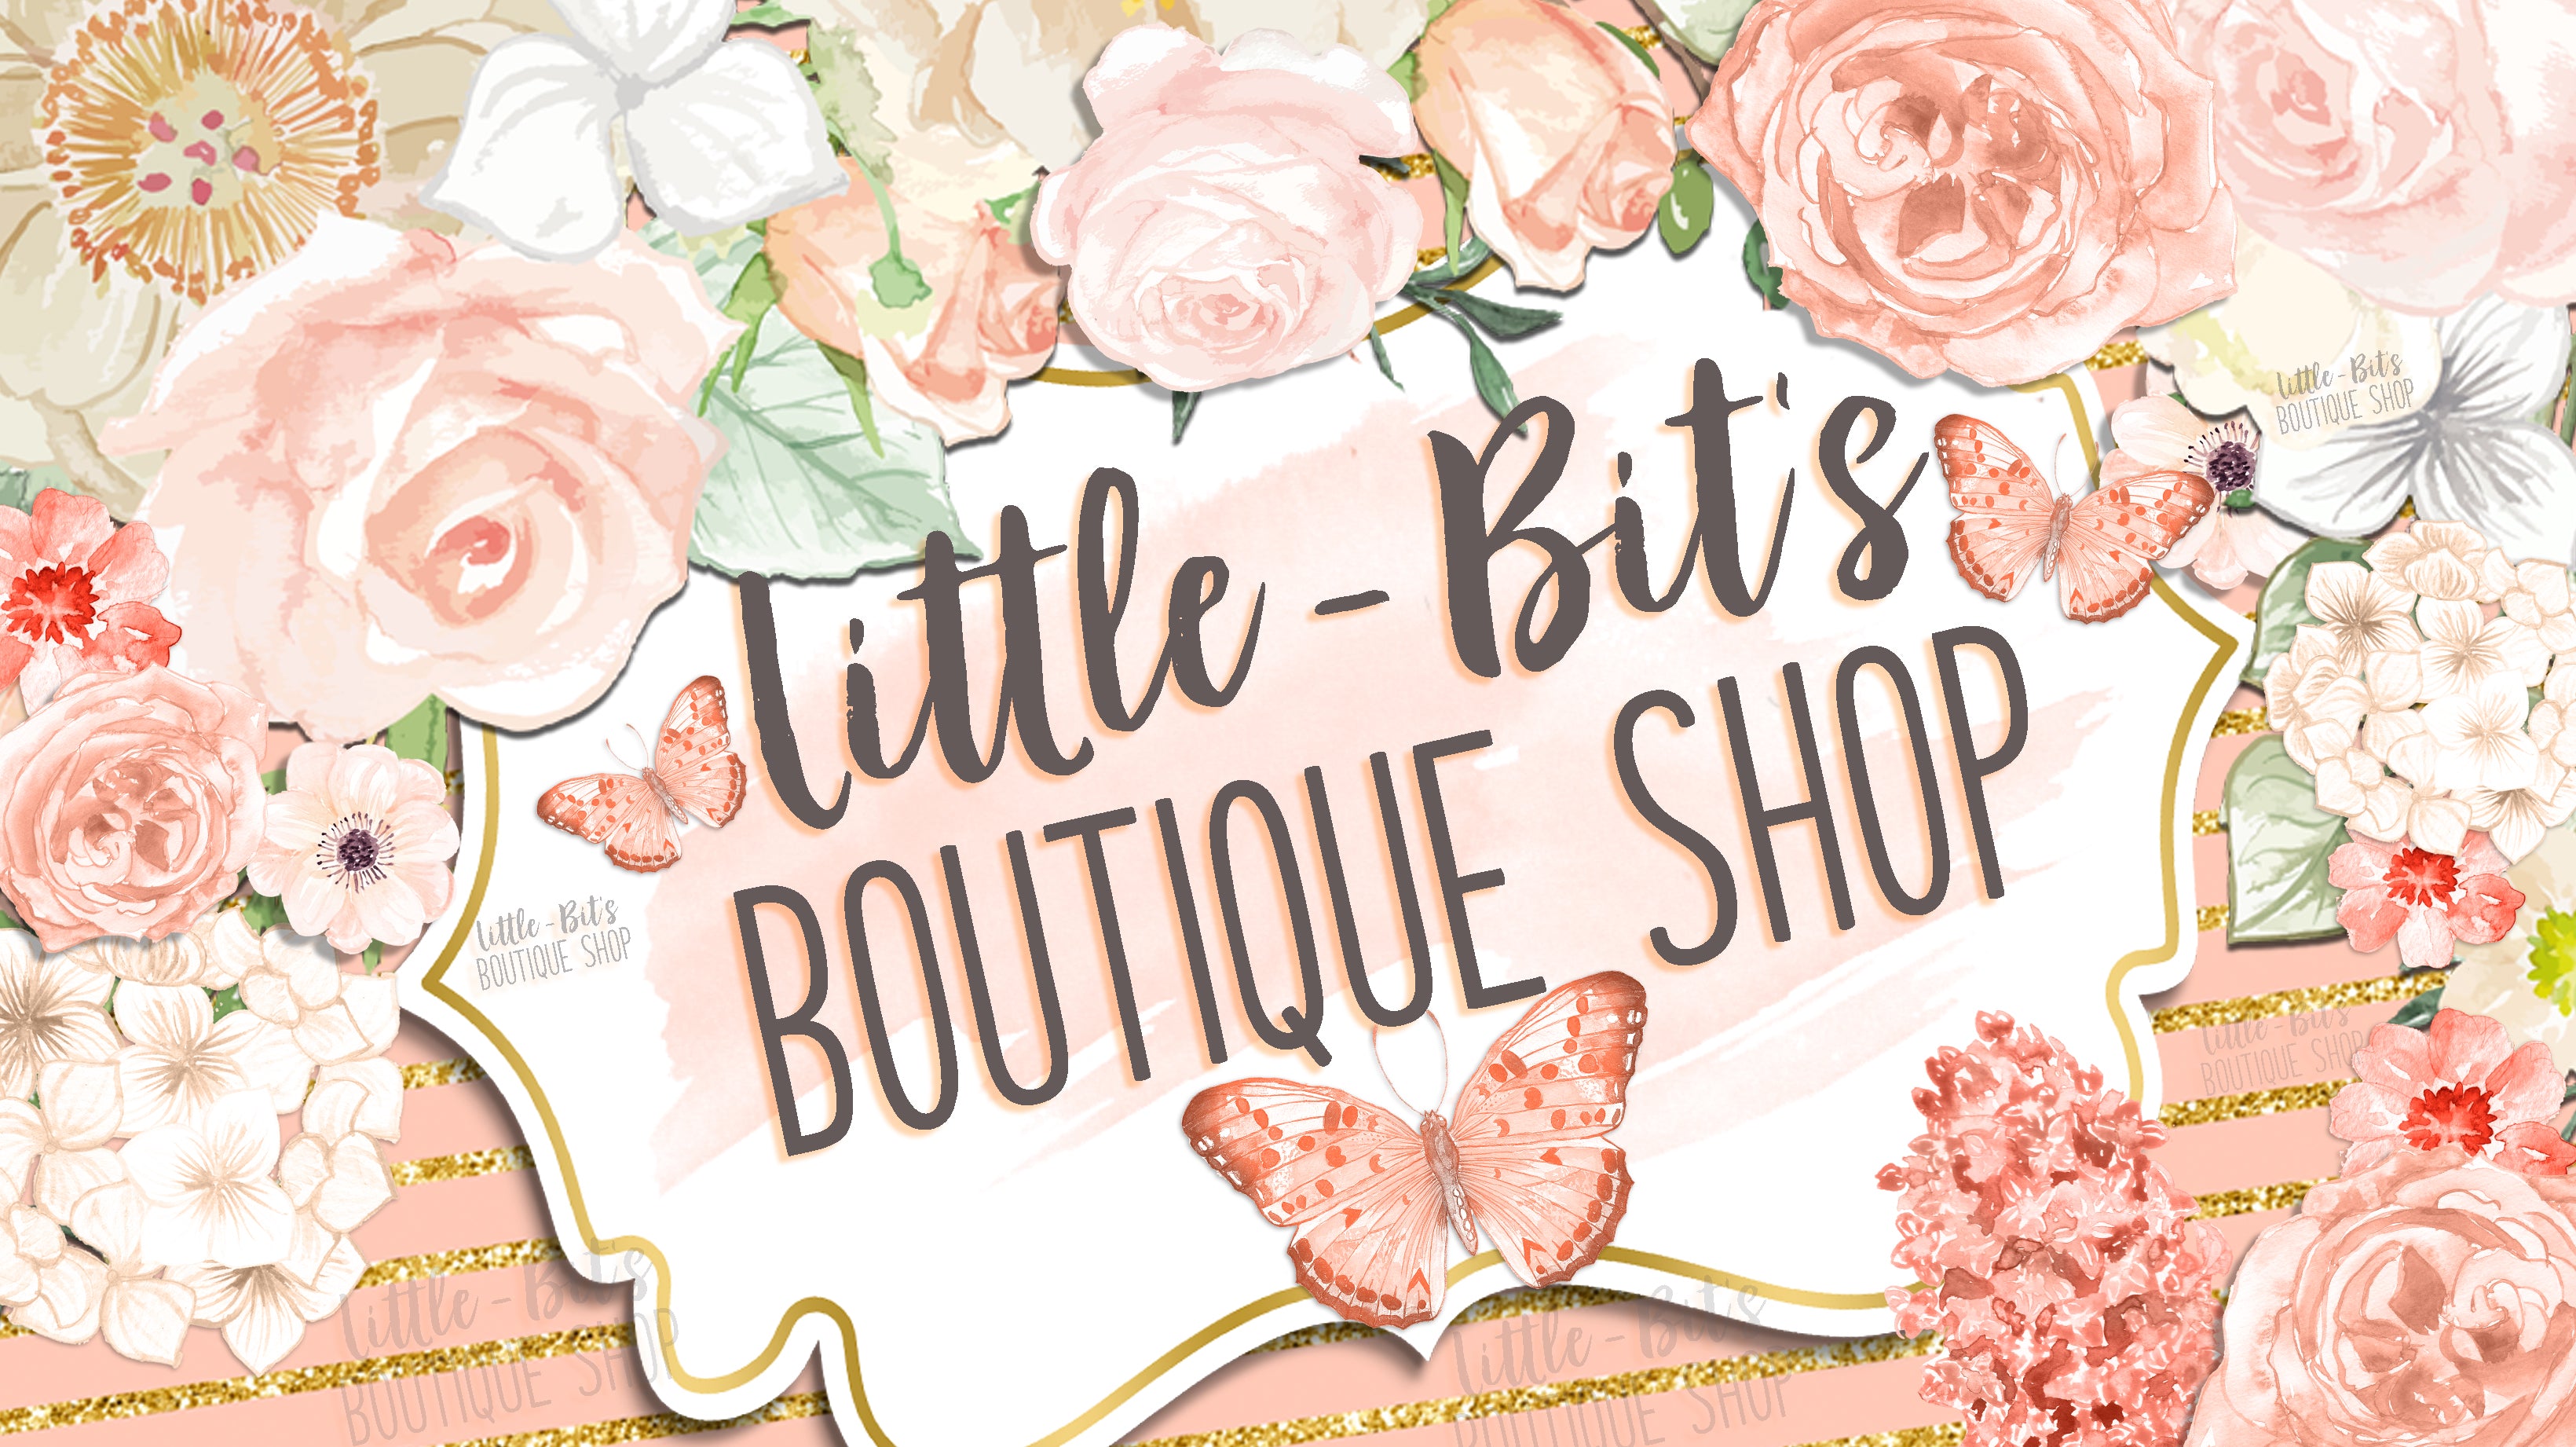 Little-Bit's Boutique Shop